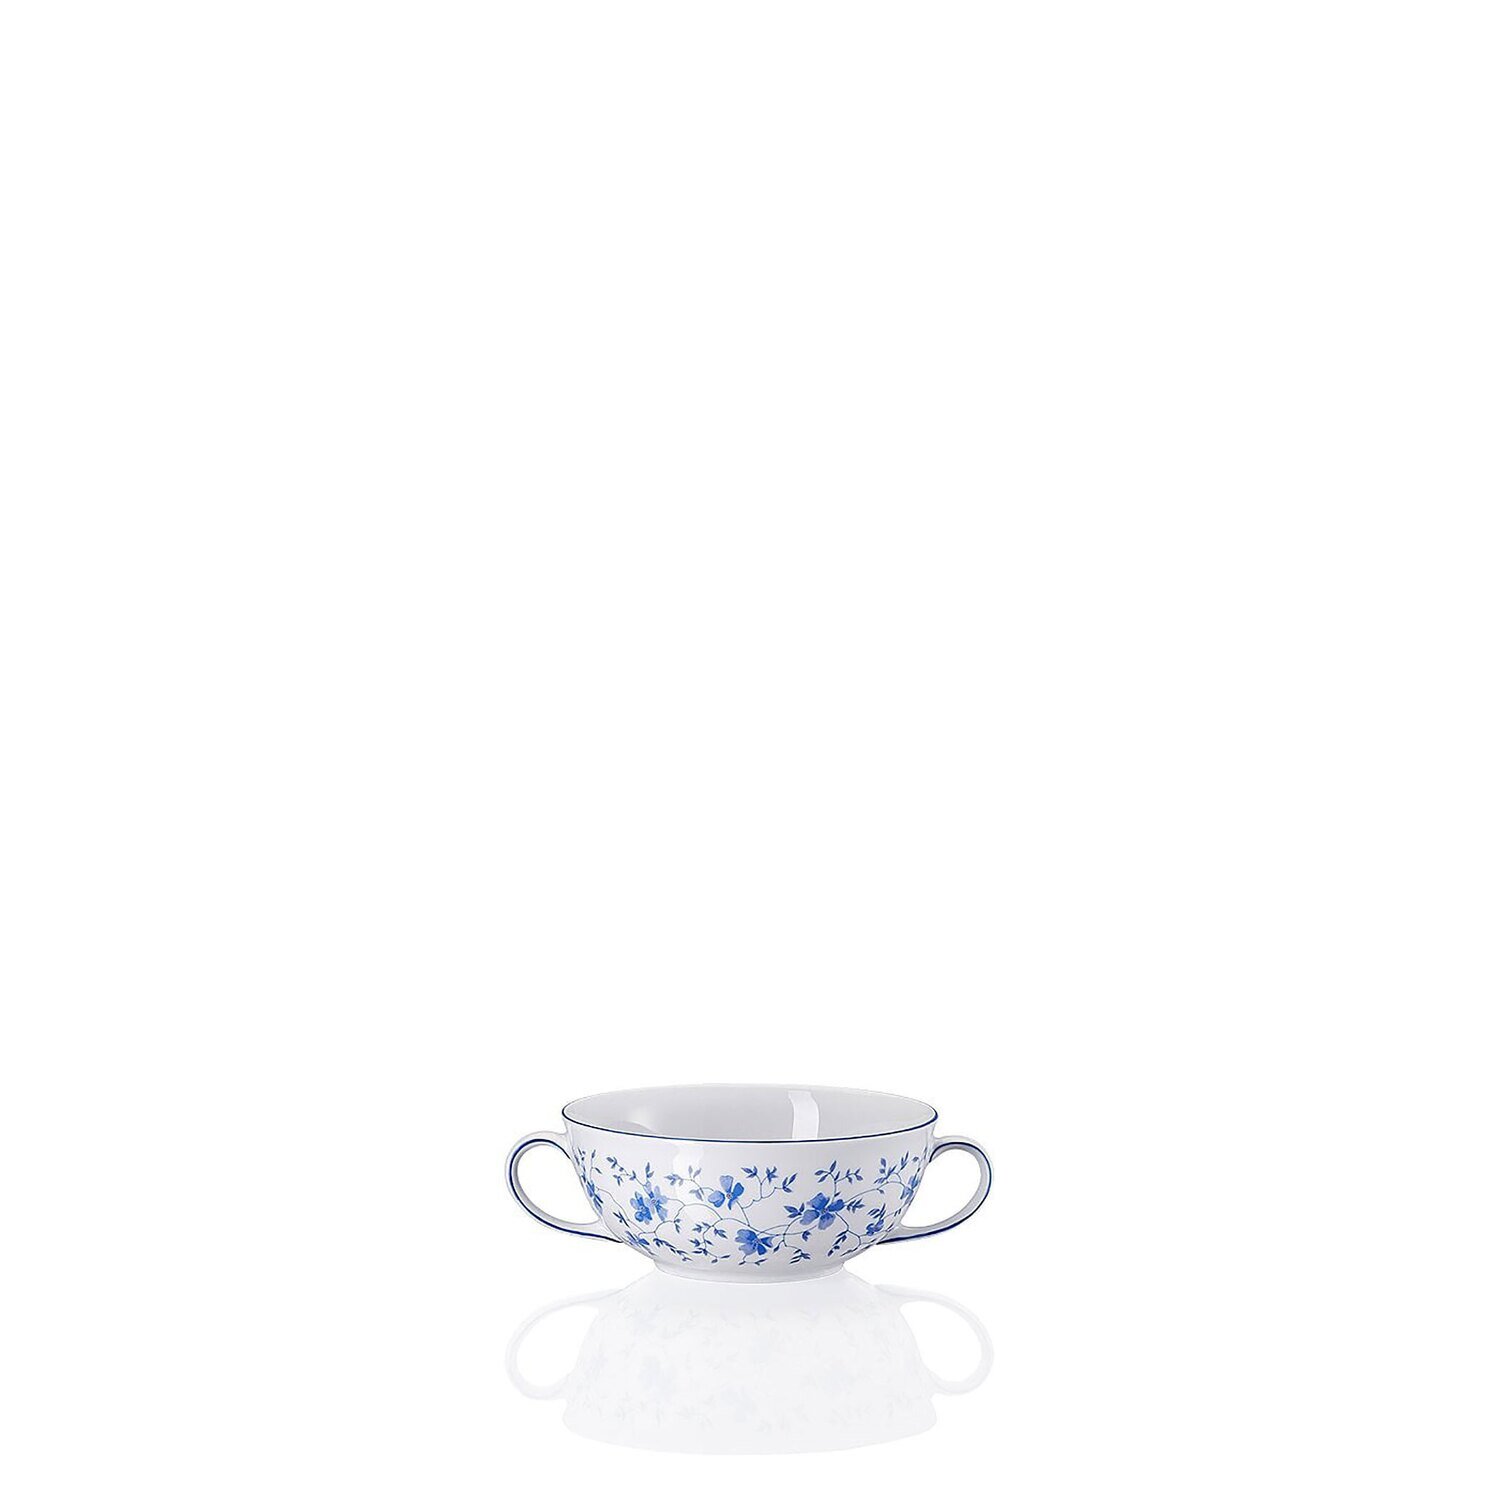 Arzberg Form 1382 Blaubluten Creamsoup Cup